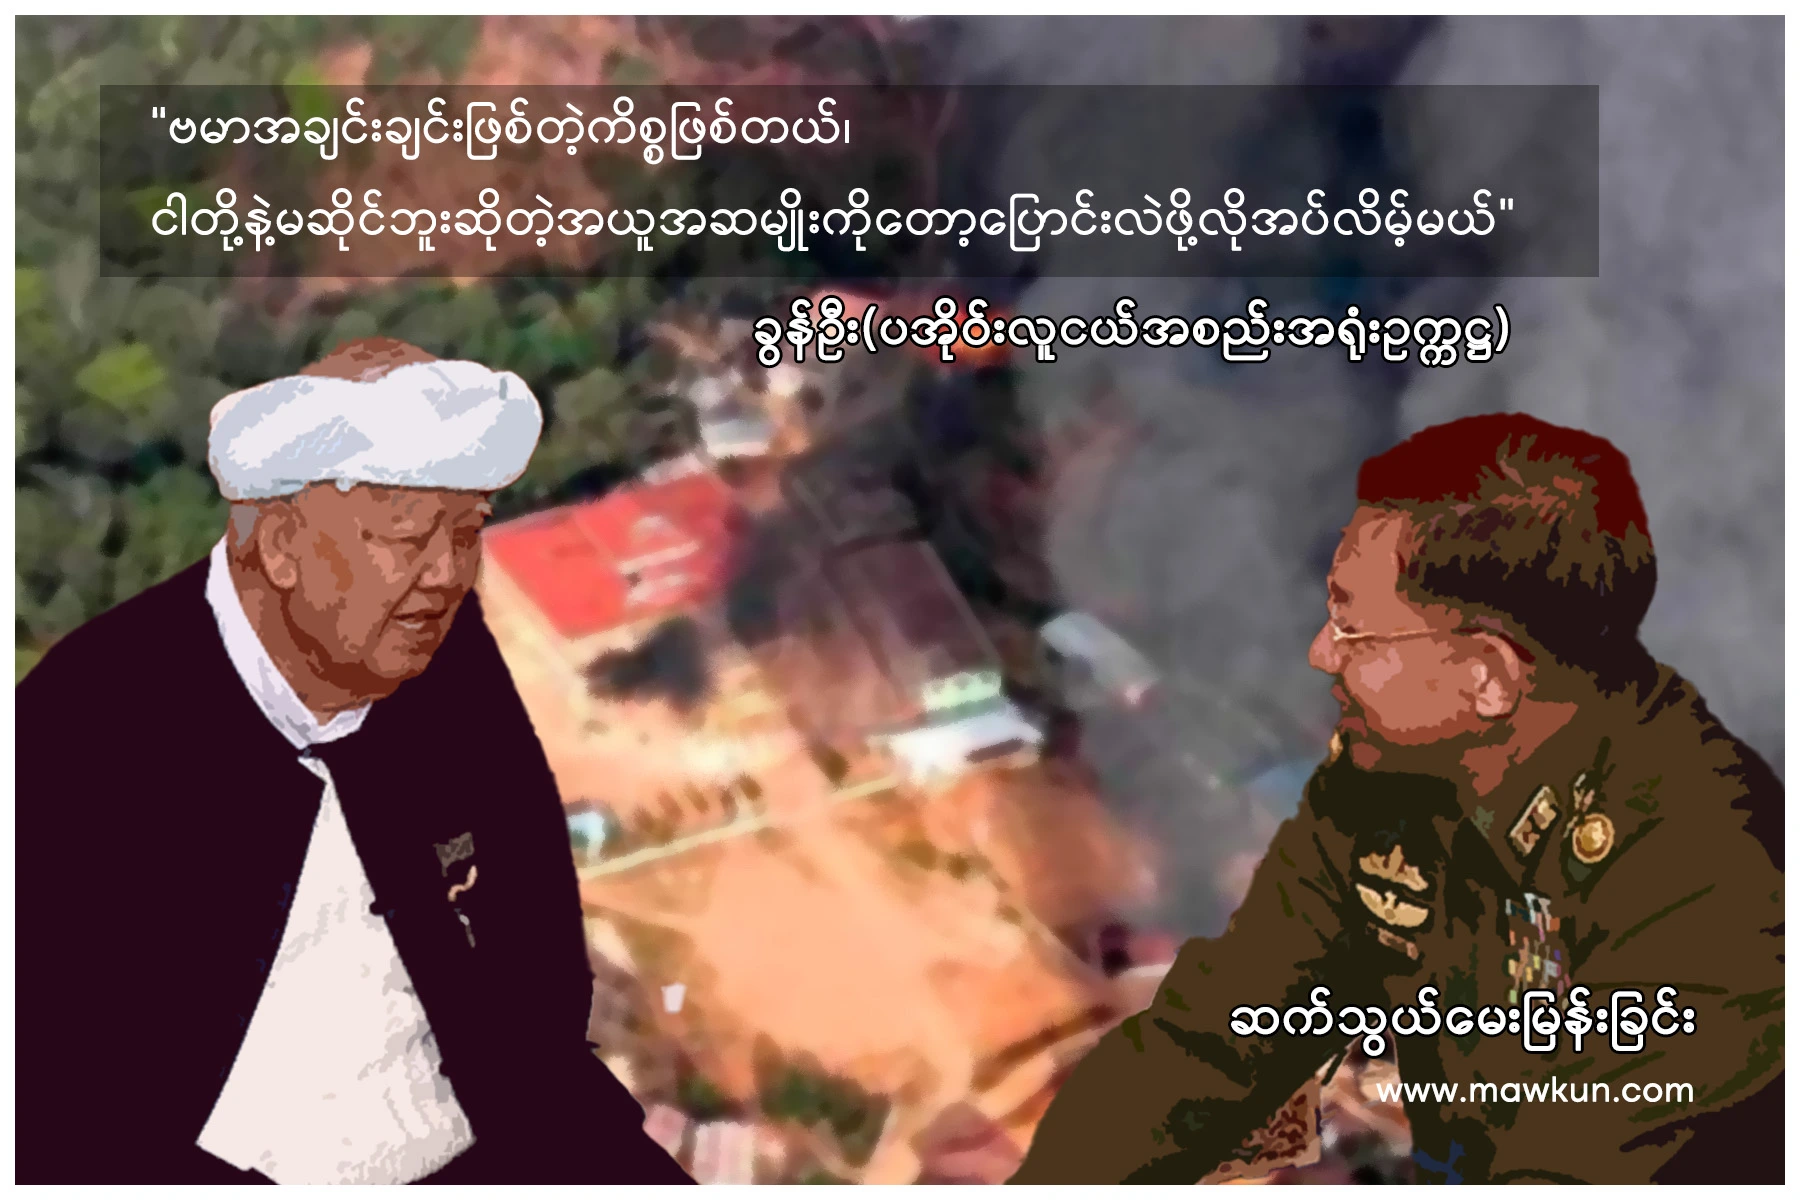 “ဗမာအချင်းချင်းဖြစ်တဲ့ကိစ္စဖြစ်တယ်၊ ငါတို့နဲ့မဆိုင်ဘူးဆိုတဲ့ အယူအဆမျိုးကိုတော့ ပြောင်းလဲဖို့လိုအပ်လိမ့်မယ်”